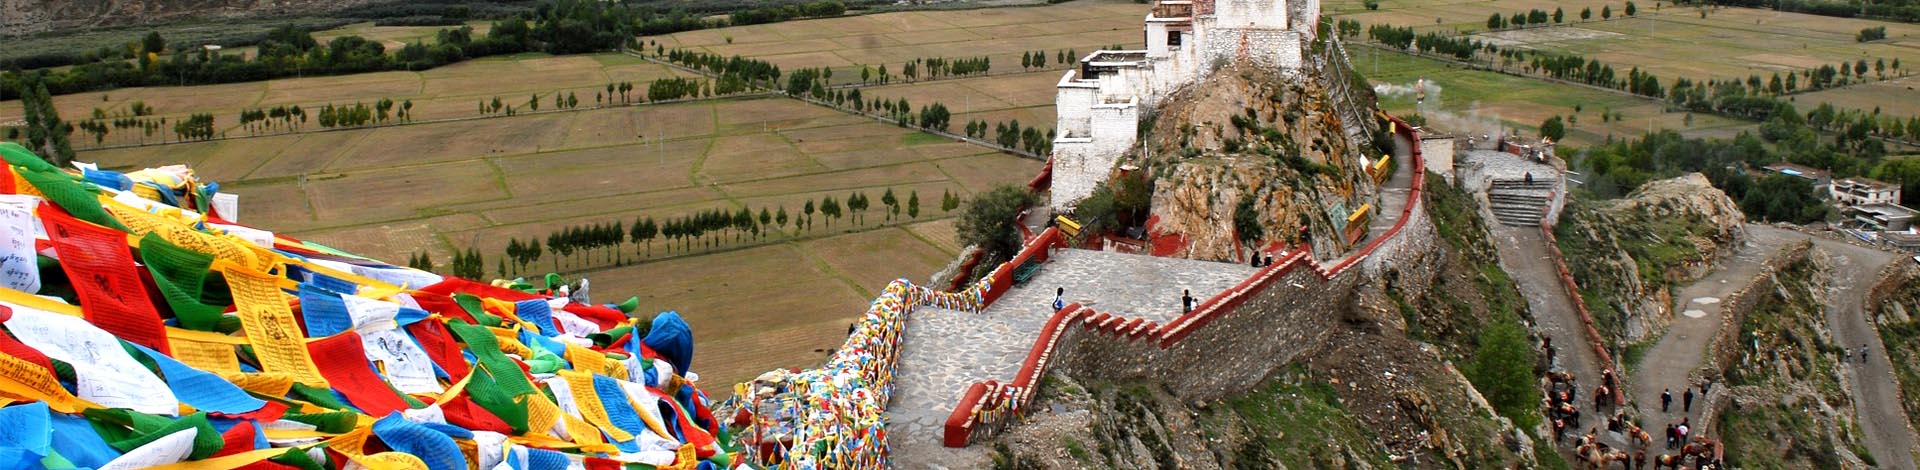 Bild-eines-tibetischen-Klosters